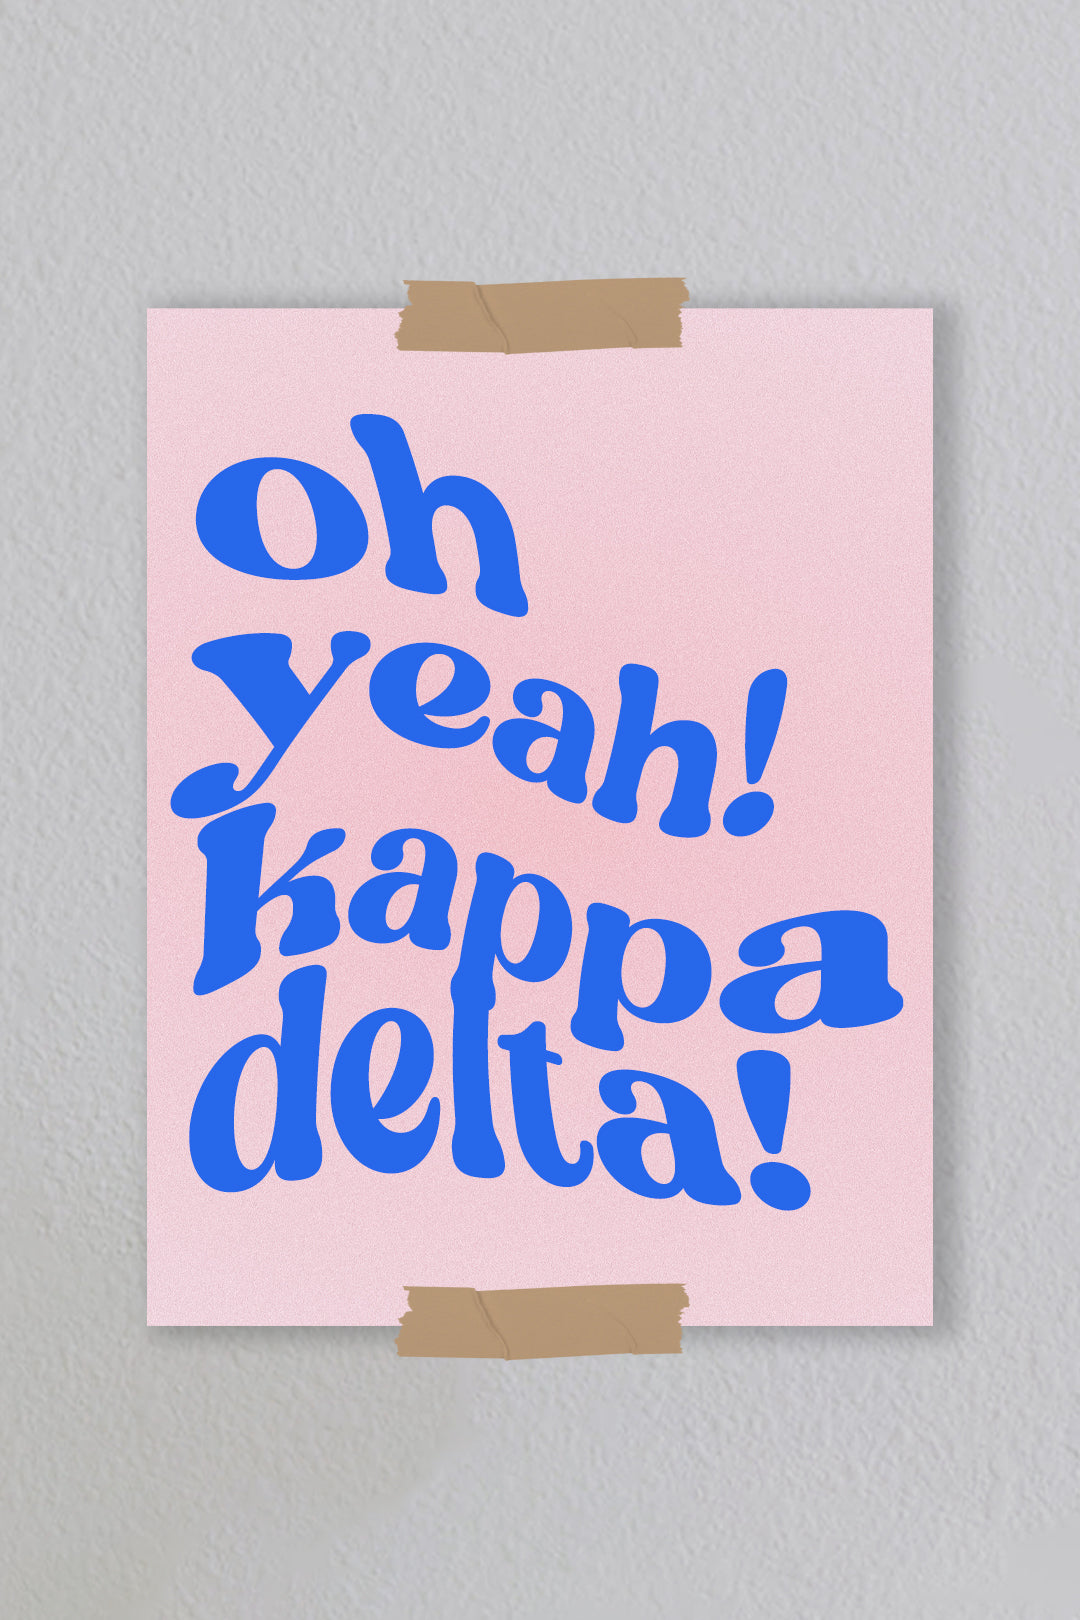 Kappa Delta - Art Print #11 (8.5x11)